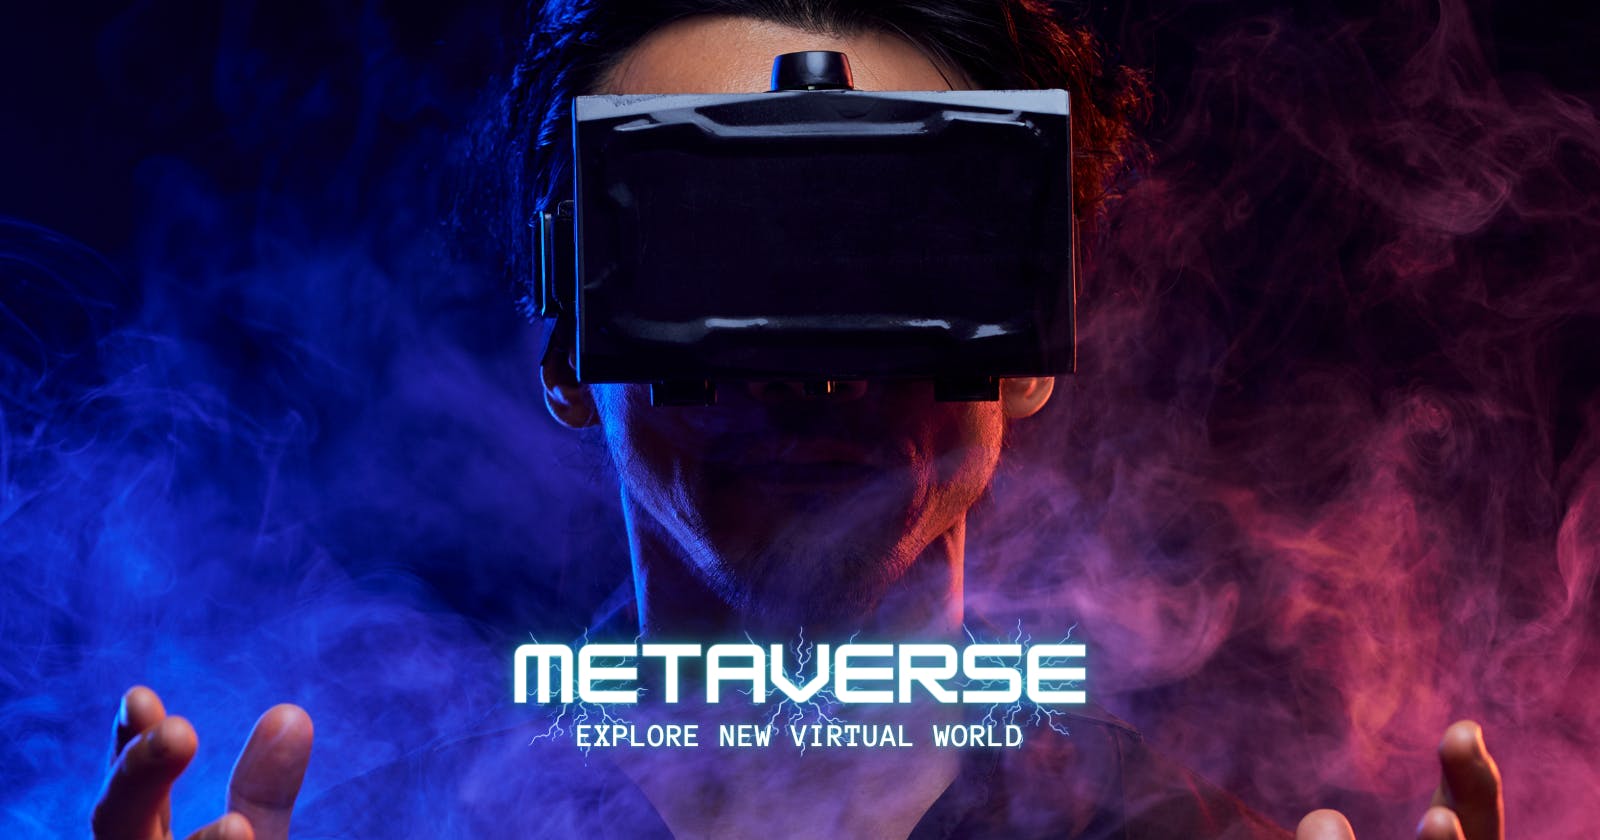 Metaverse — A 3D Internet